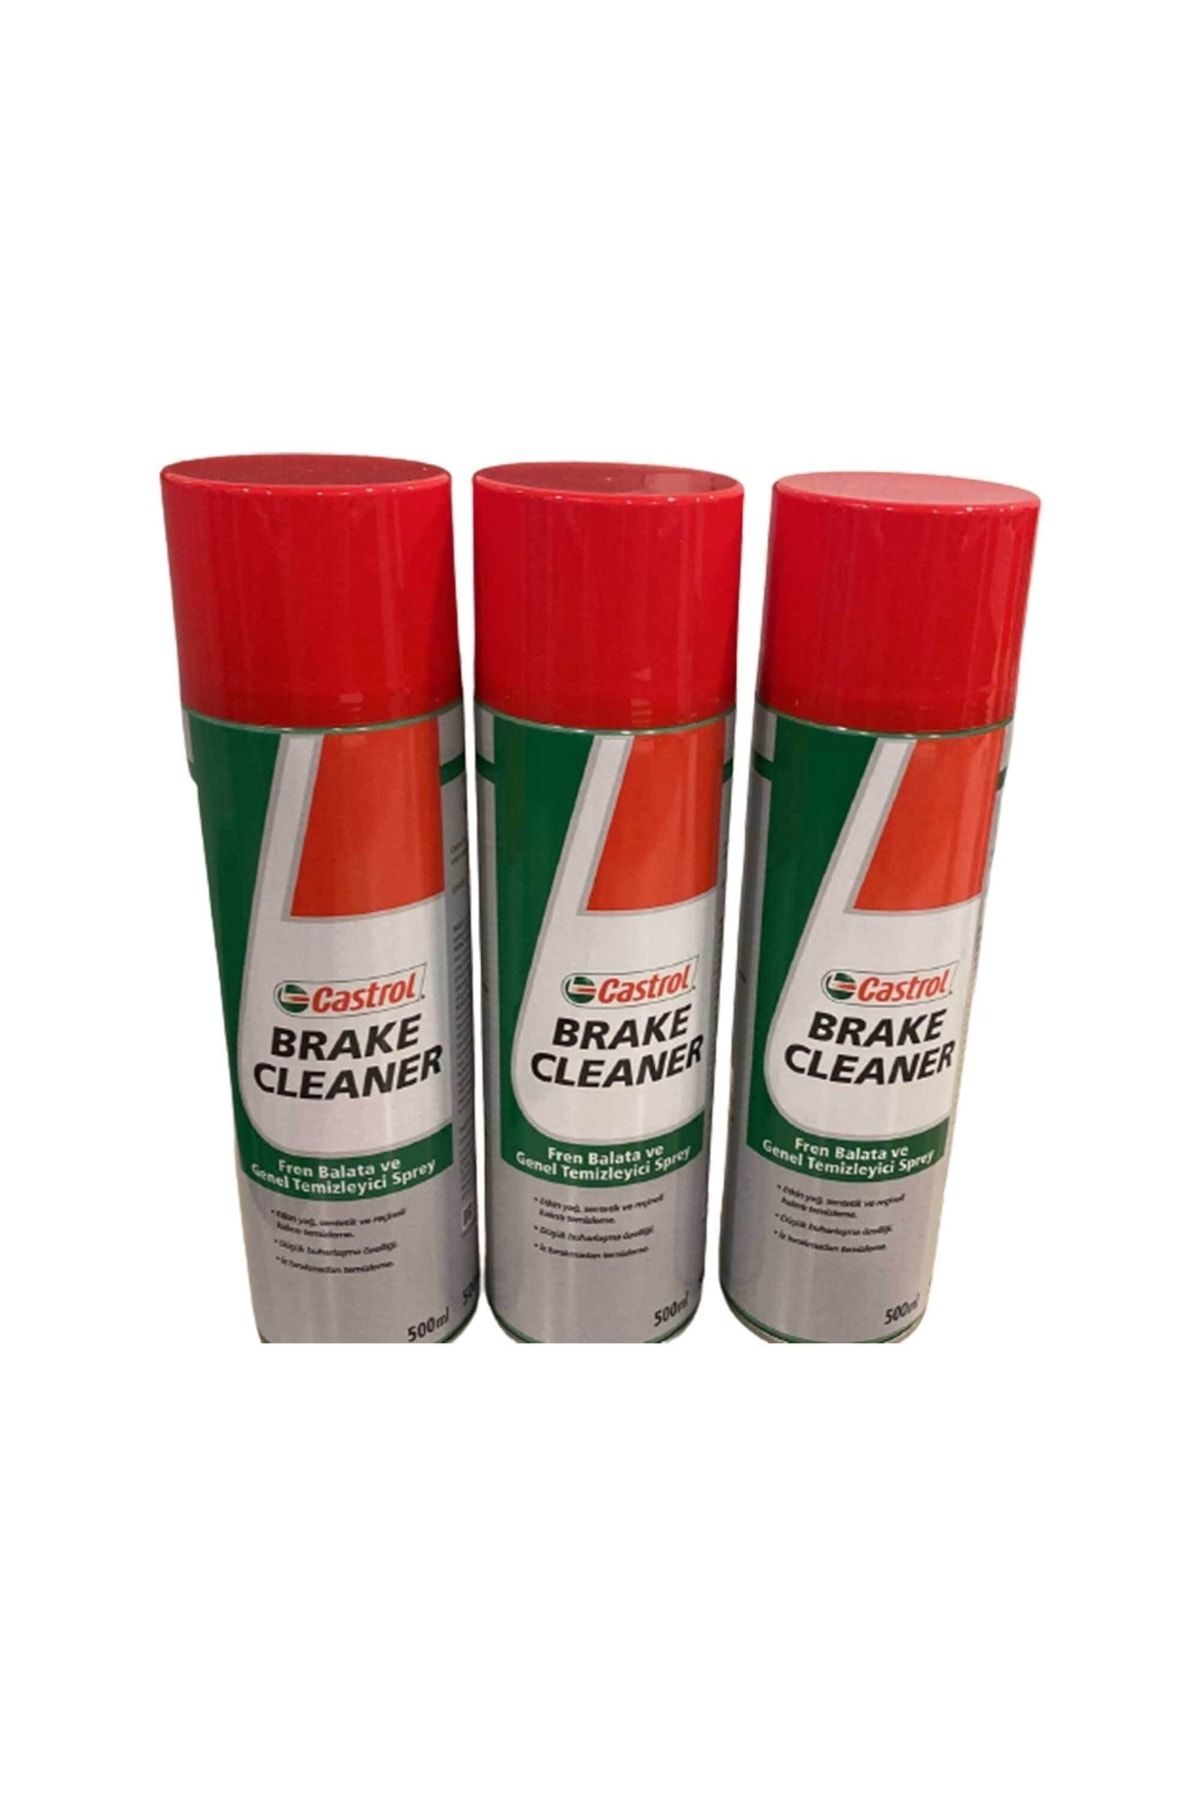 Castrol Brake Cleaner 3'lü Fren Balata Ve Genel Temizleme Spreyi 500 ml